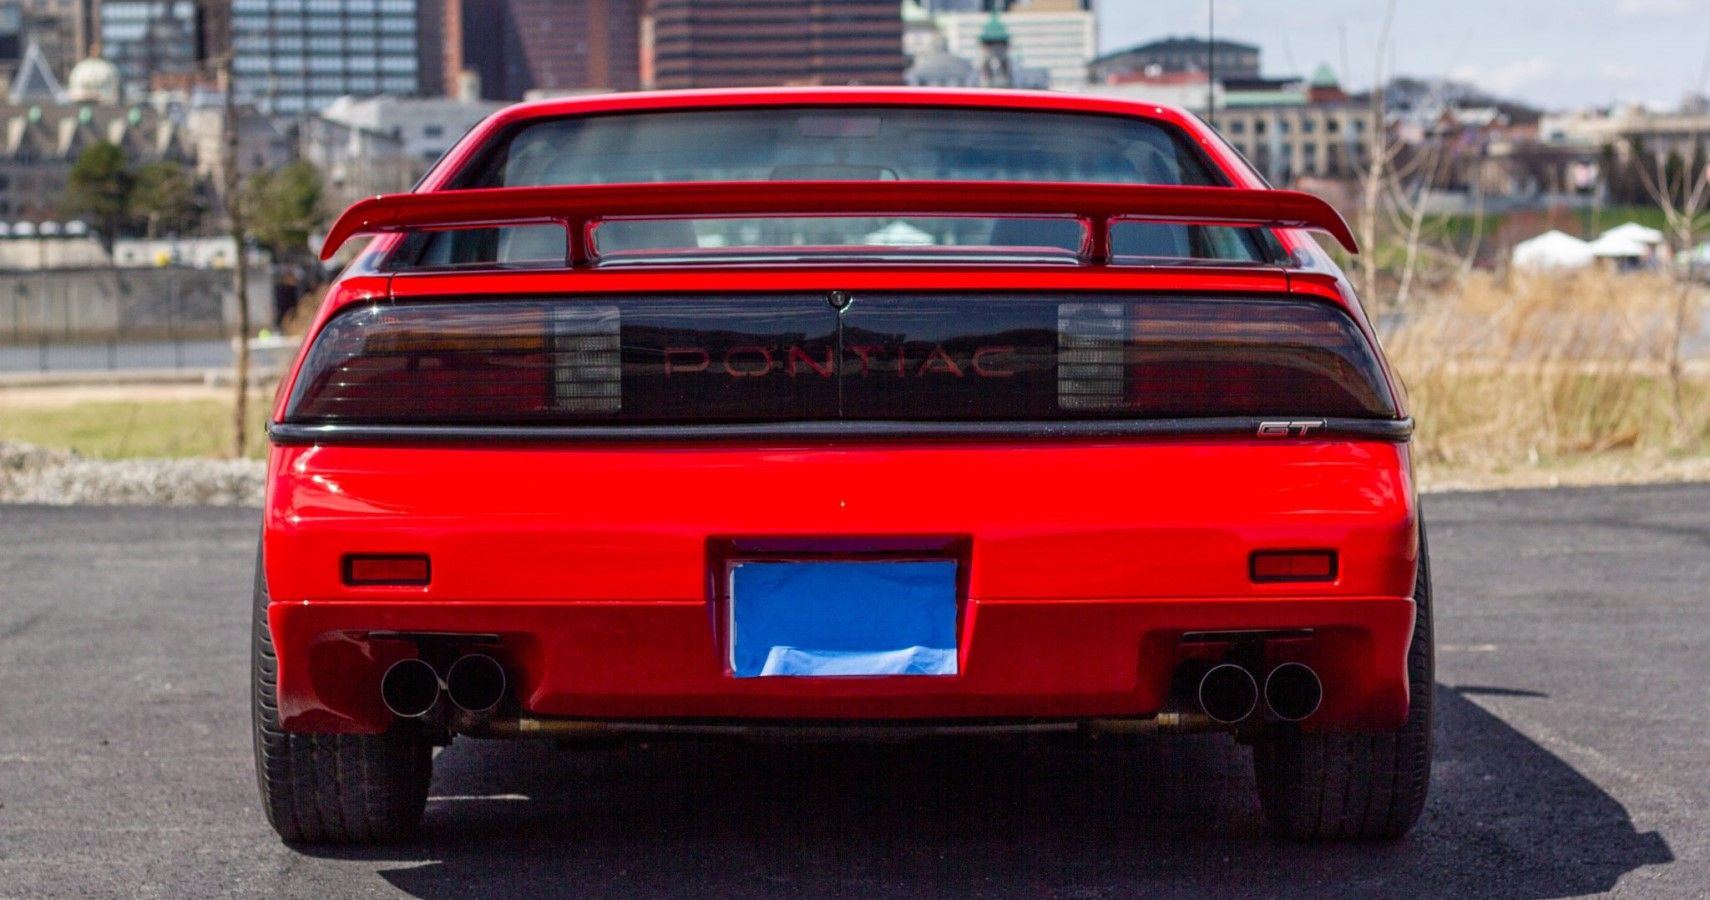 Pontiac Fiero rear view